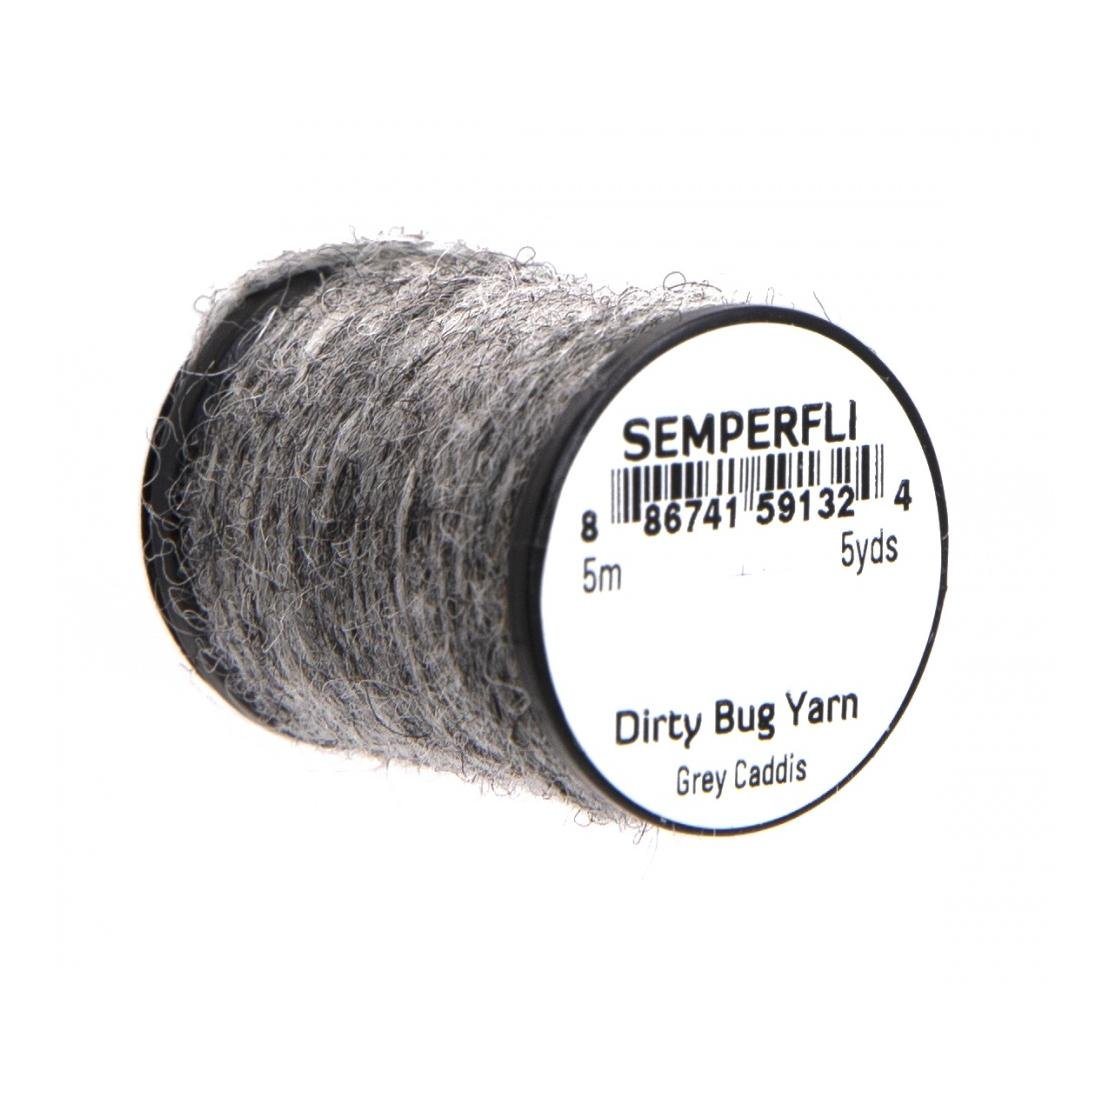 Image of Semperfli Dirty Bug Yarn Grey Caddis bei fischen.ch